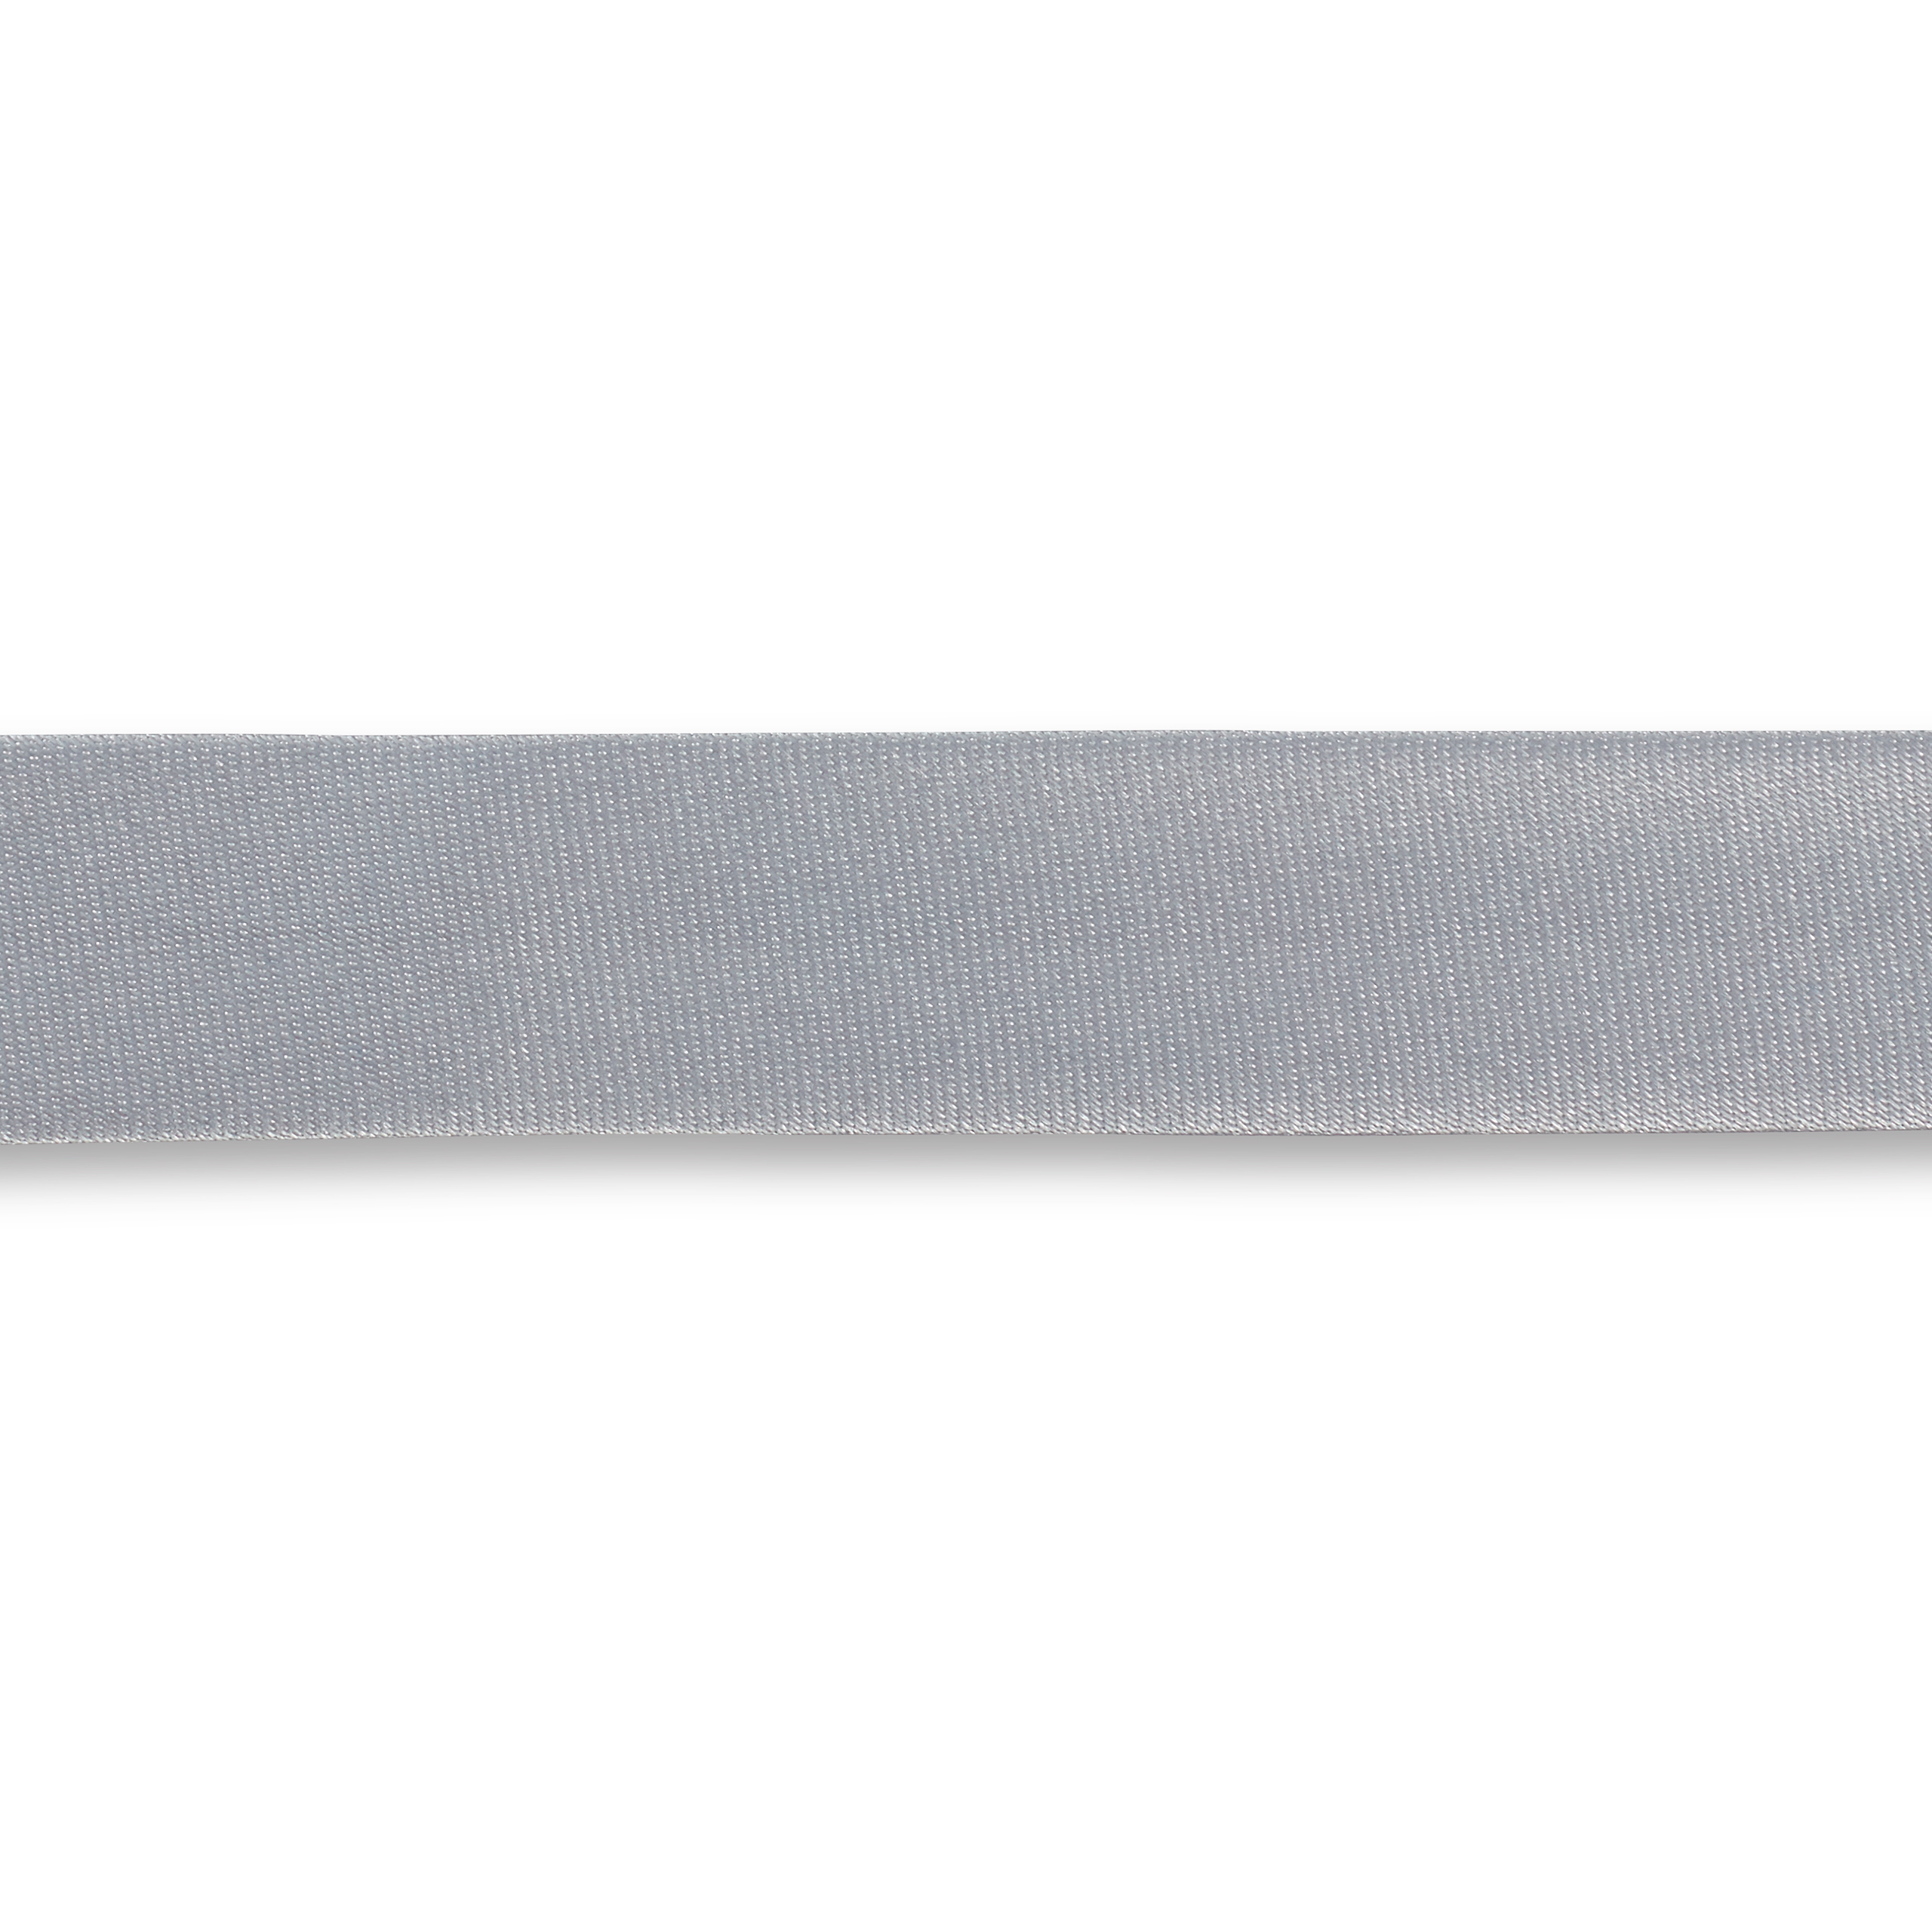 Schrägband Duchesse 40/20 mm silber, Meterware, Einfassband, Satin-Schrägband